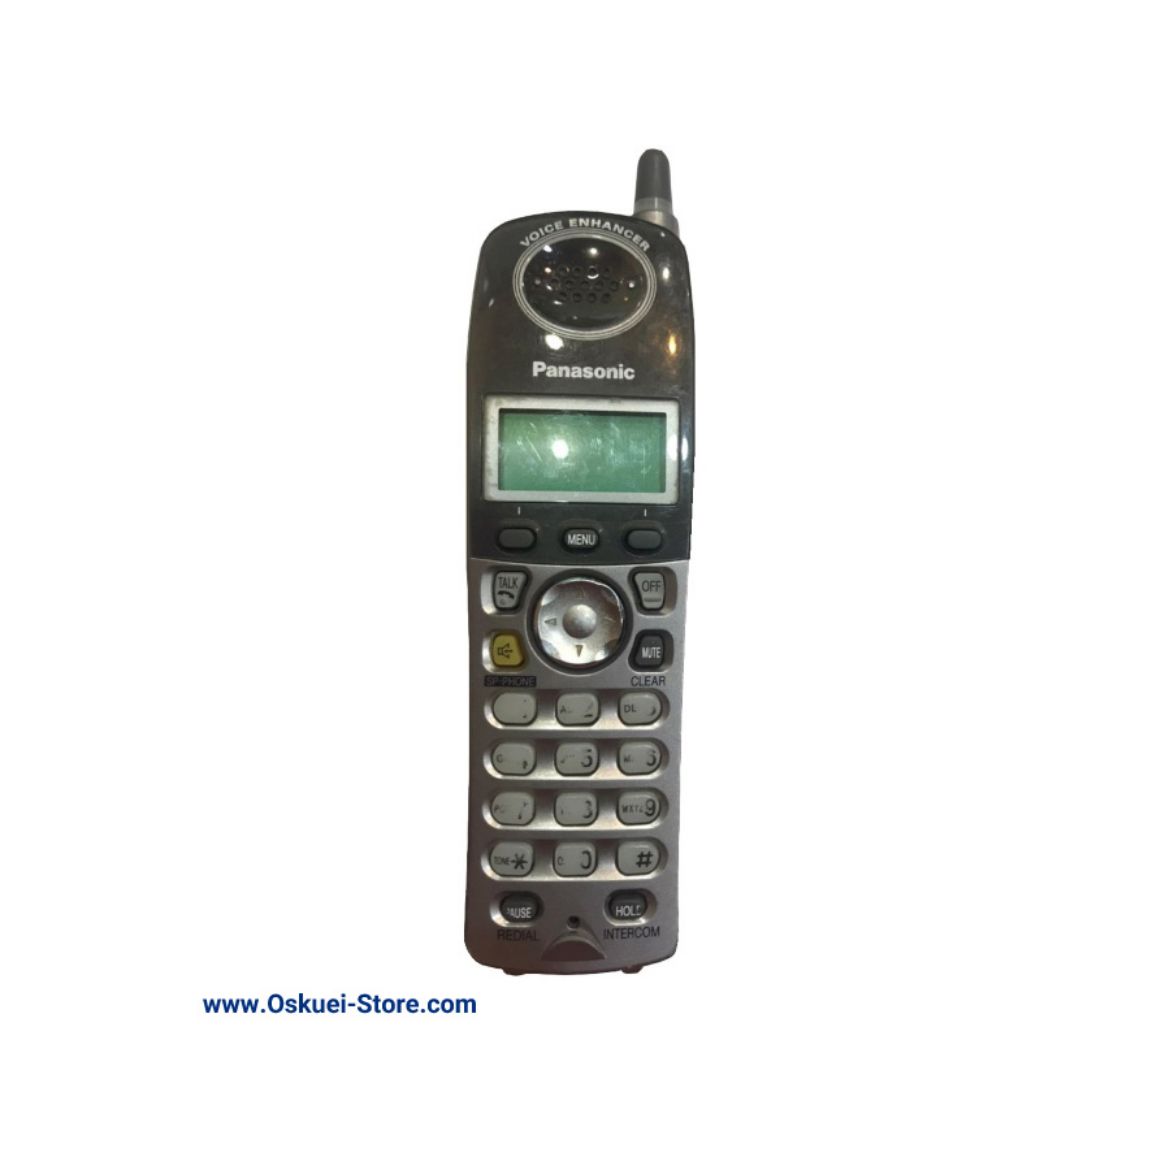 Panasonic KX-TGA224 Cordless Telephone